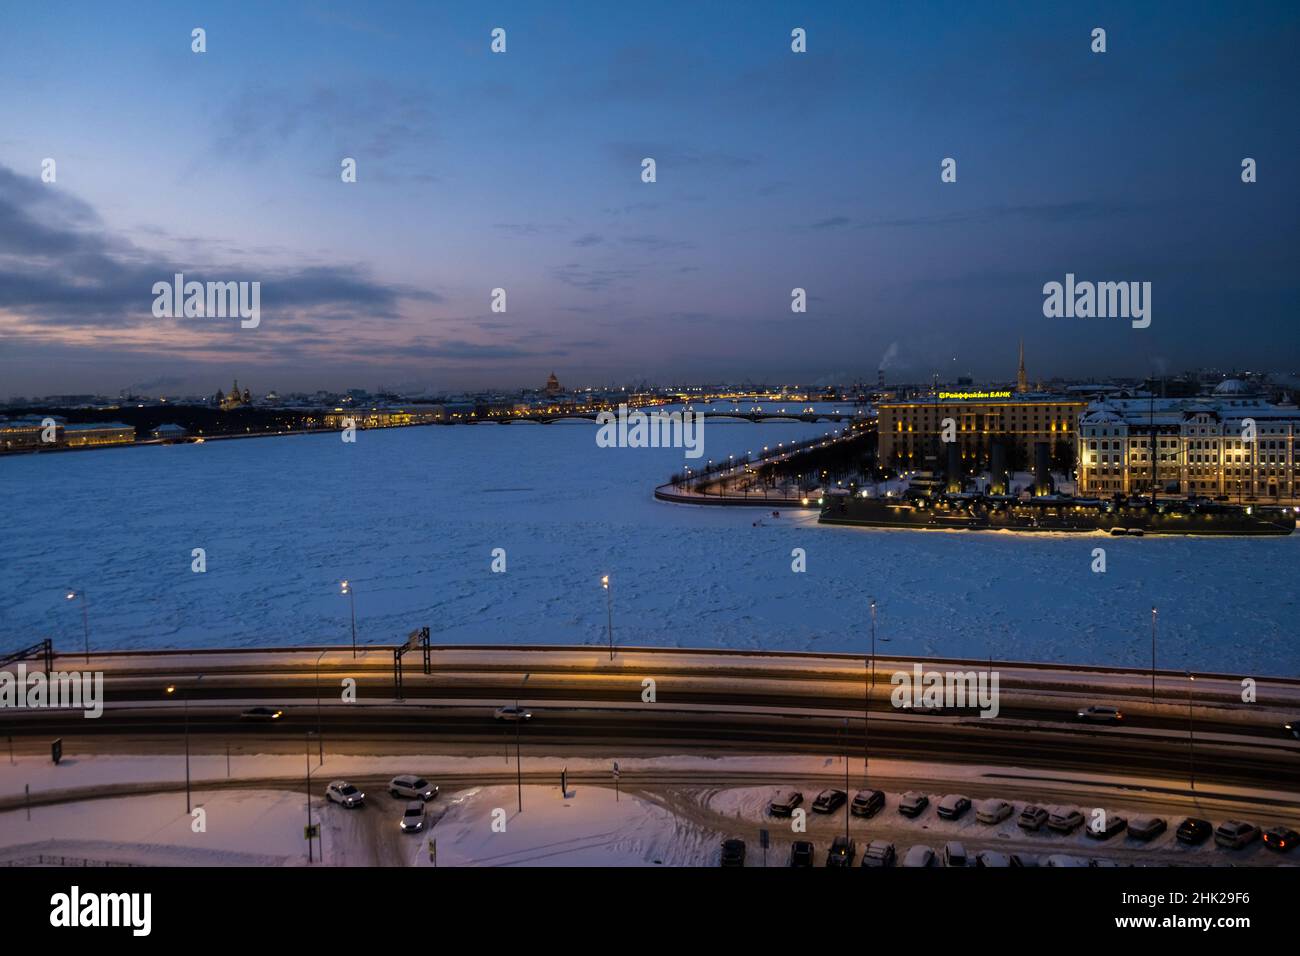 St. Petersburg, Russland - Dezember, 2021: Blick auf das historische Schlachtschiff Aurora Cruiser im gefrorenen Fluss Neva am frühen Morgen. Stockfoto